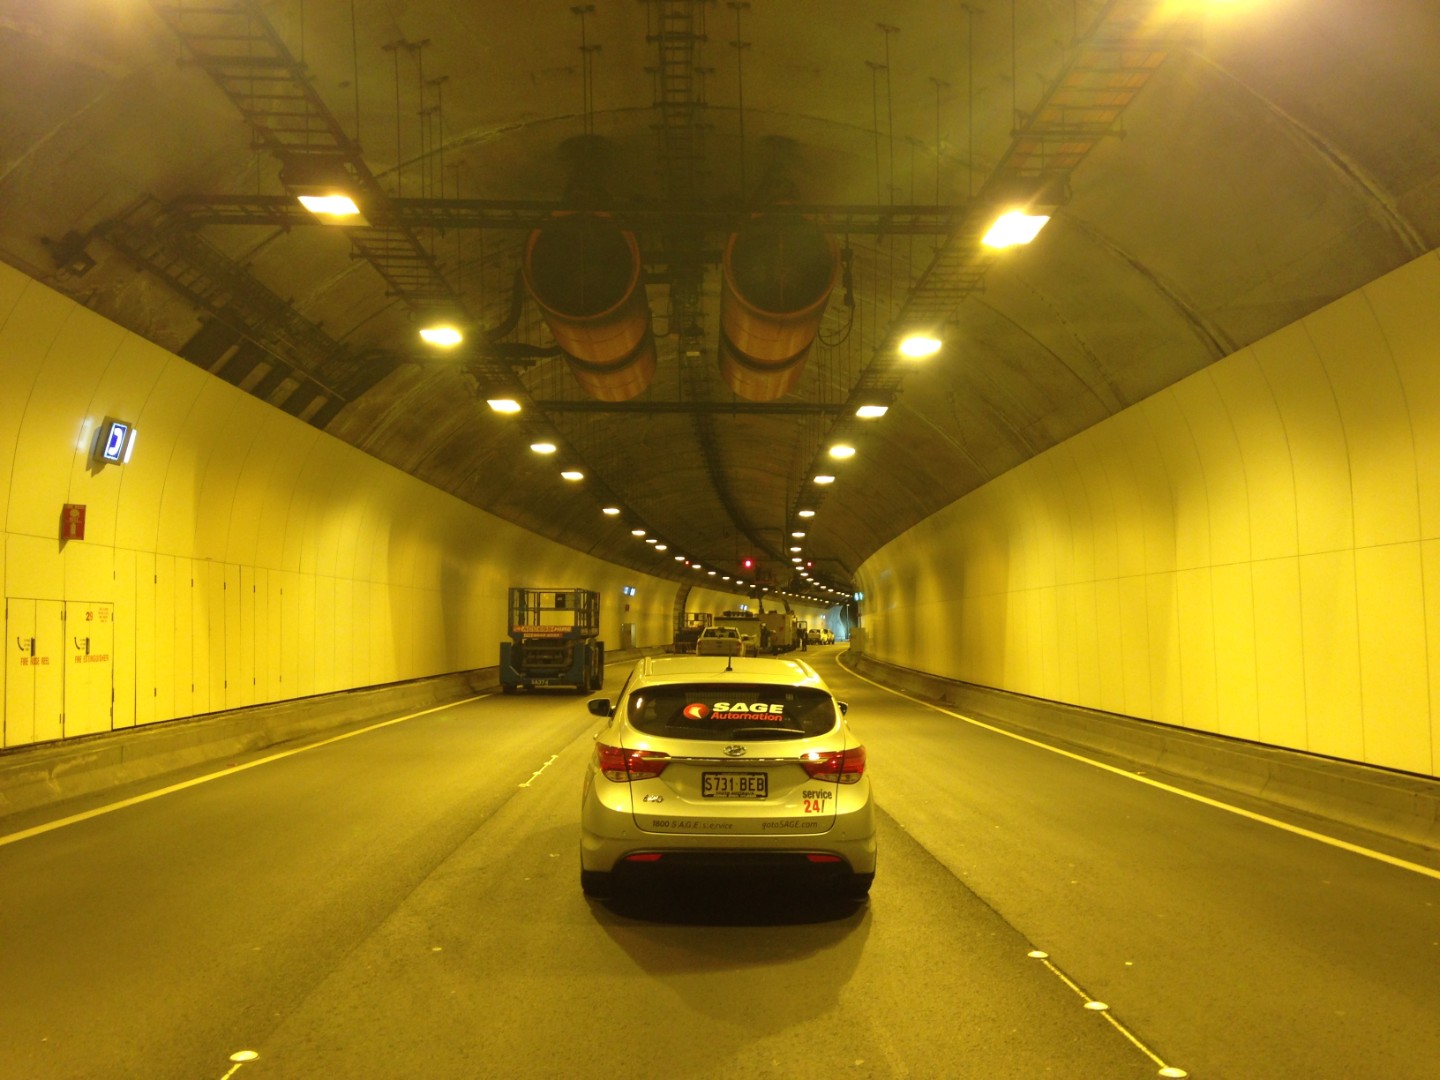 Heysen Tunnel with service vehicel